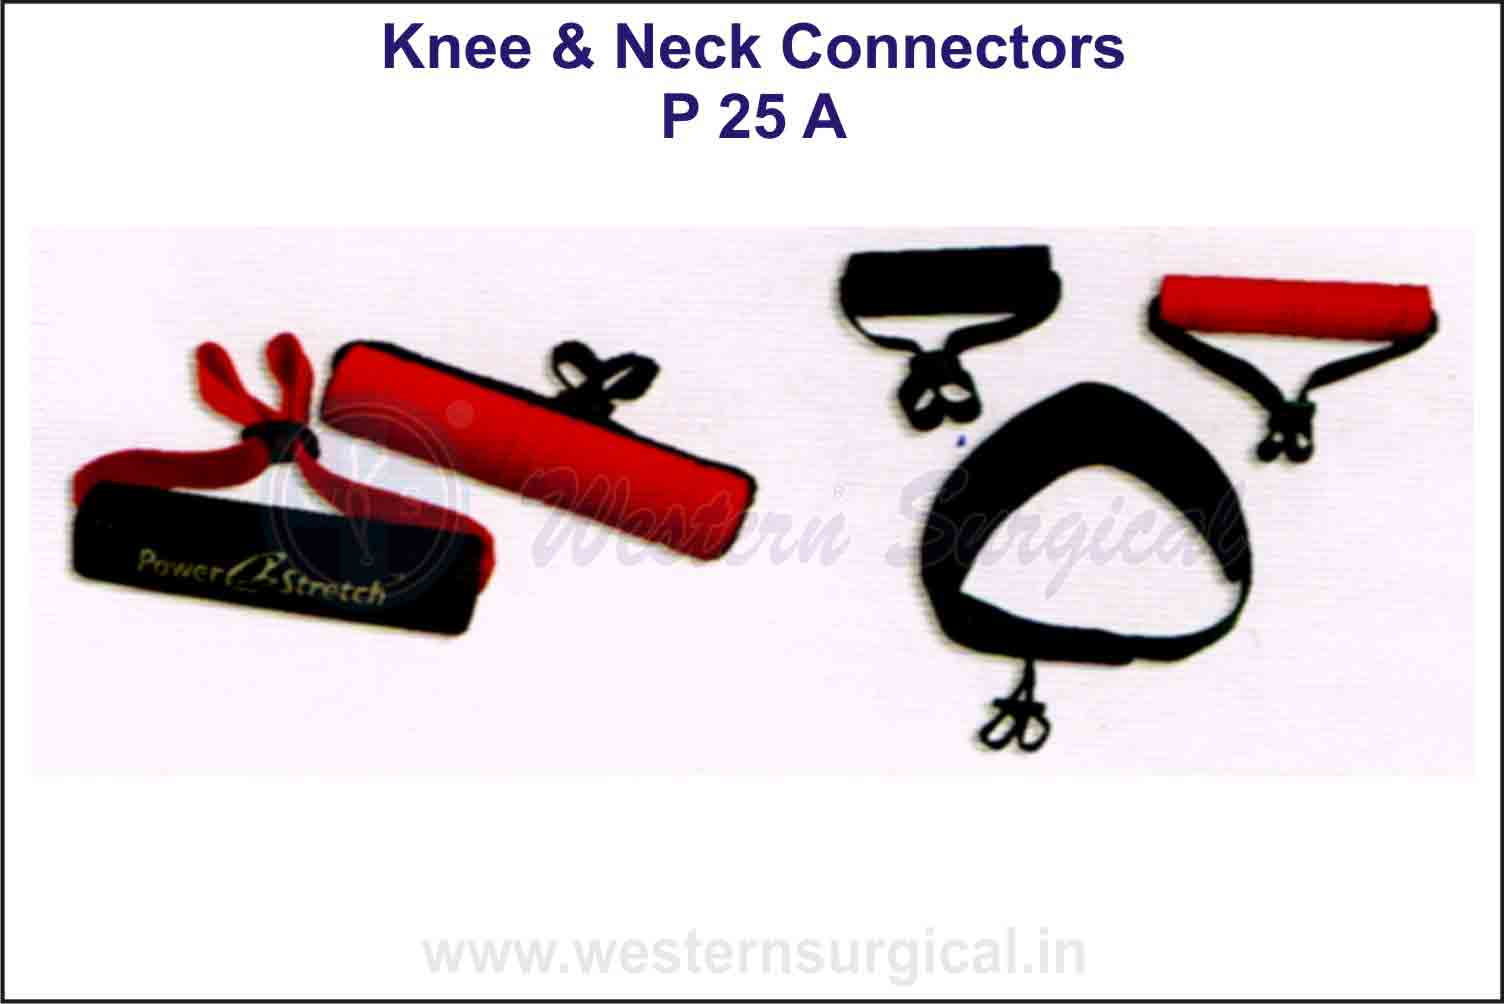 Knee & Neck Connectors